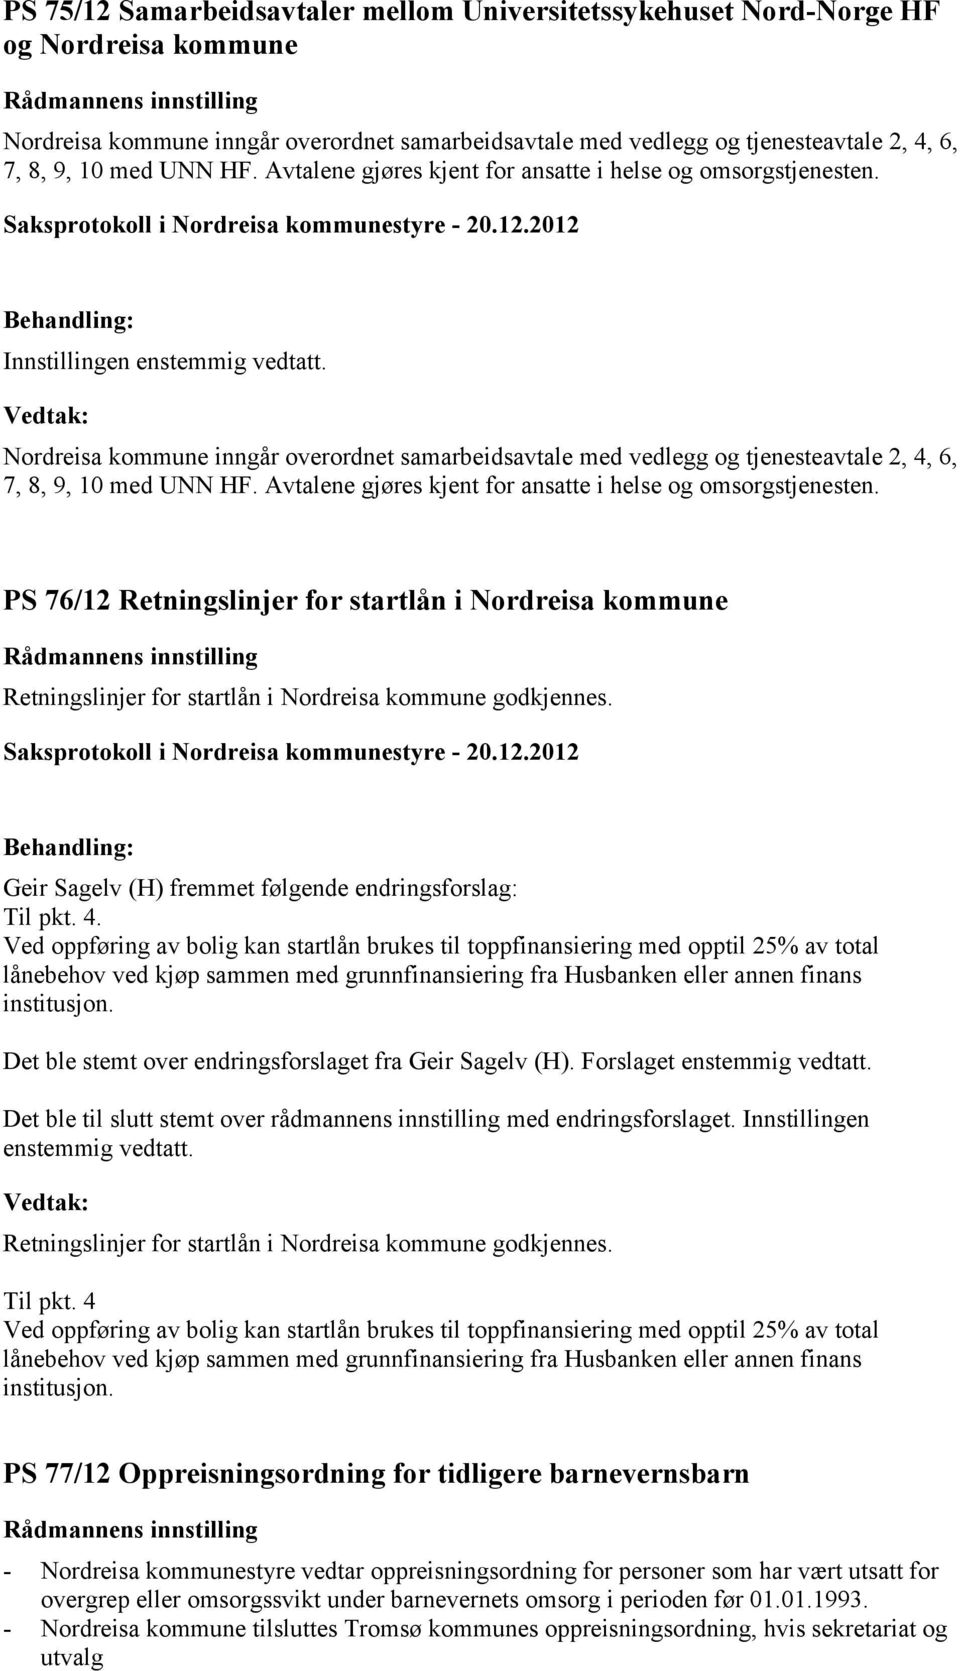 Nordreisa kommune inngår overordnet samarbeidsavtale med vedlegg og tjenesteavtale 2, 4, 6, 7, 8, 9, 10 med UNN HF. Avtalene gjøres kjent for ansatte i helse og omsorgstjenesten.